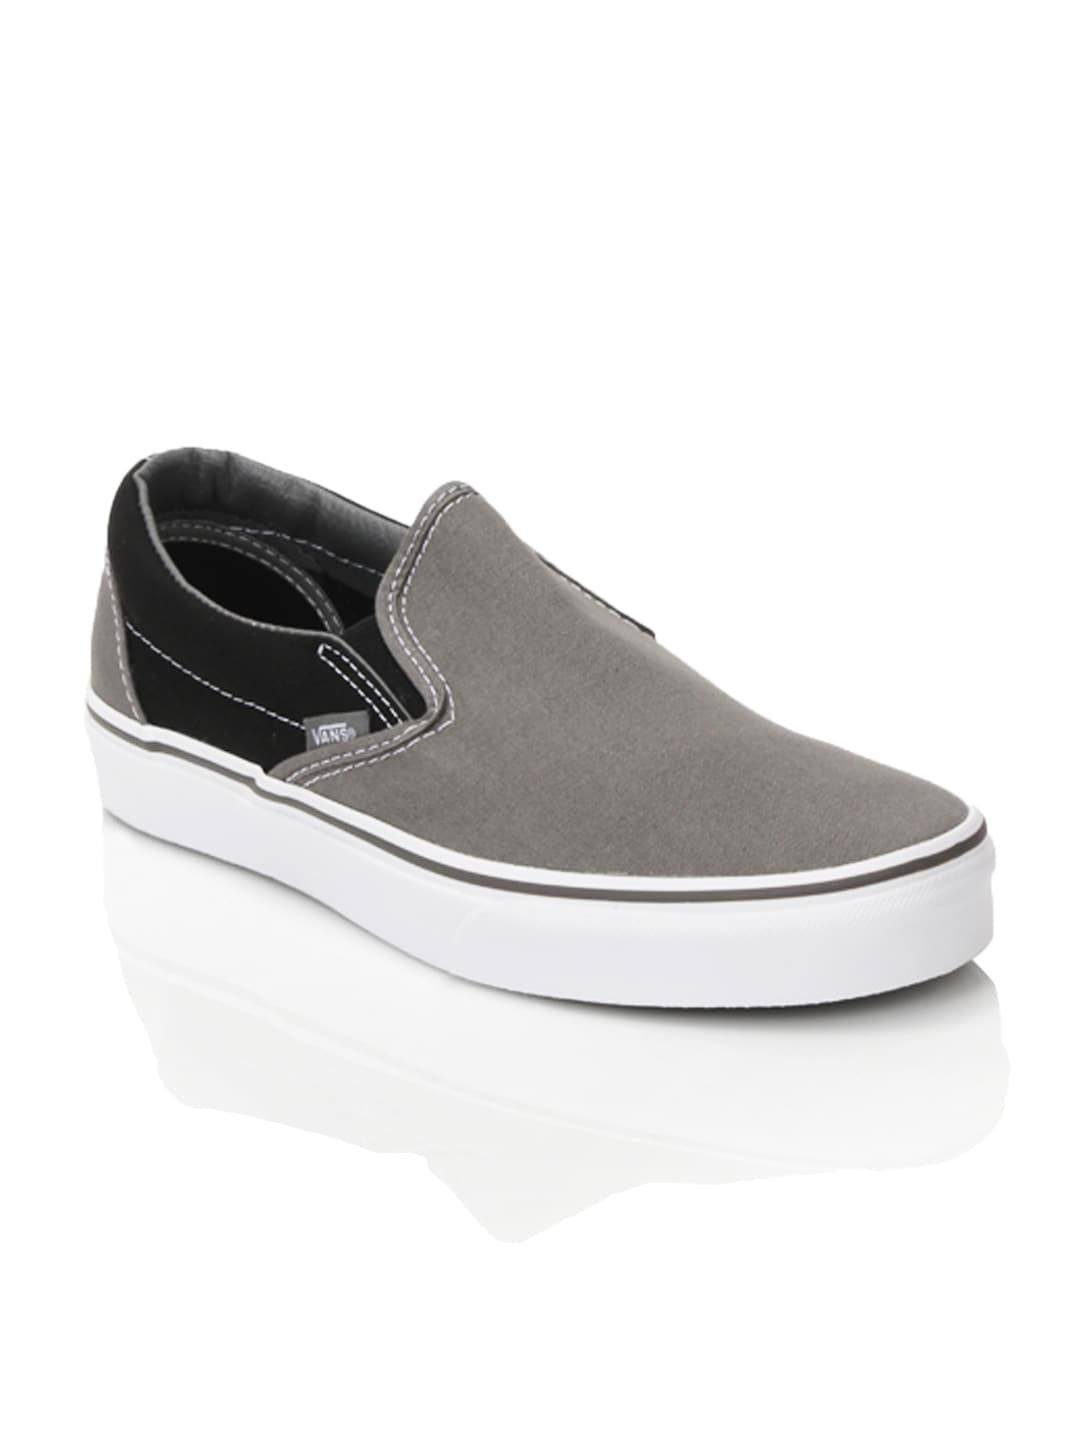 Vans Men Classic Slip-On Grey Shoes